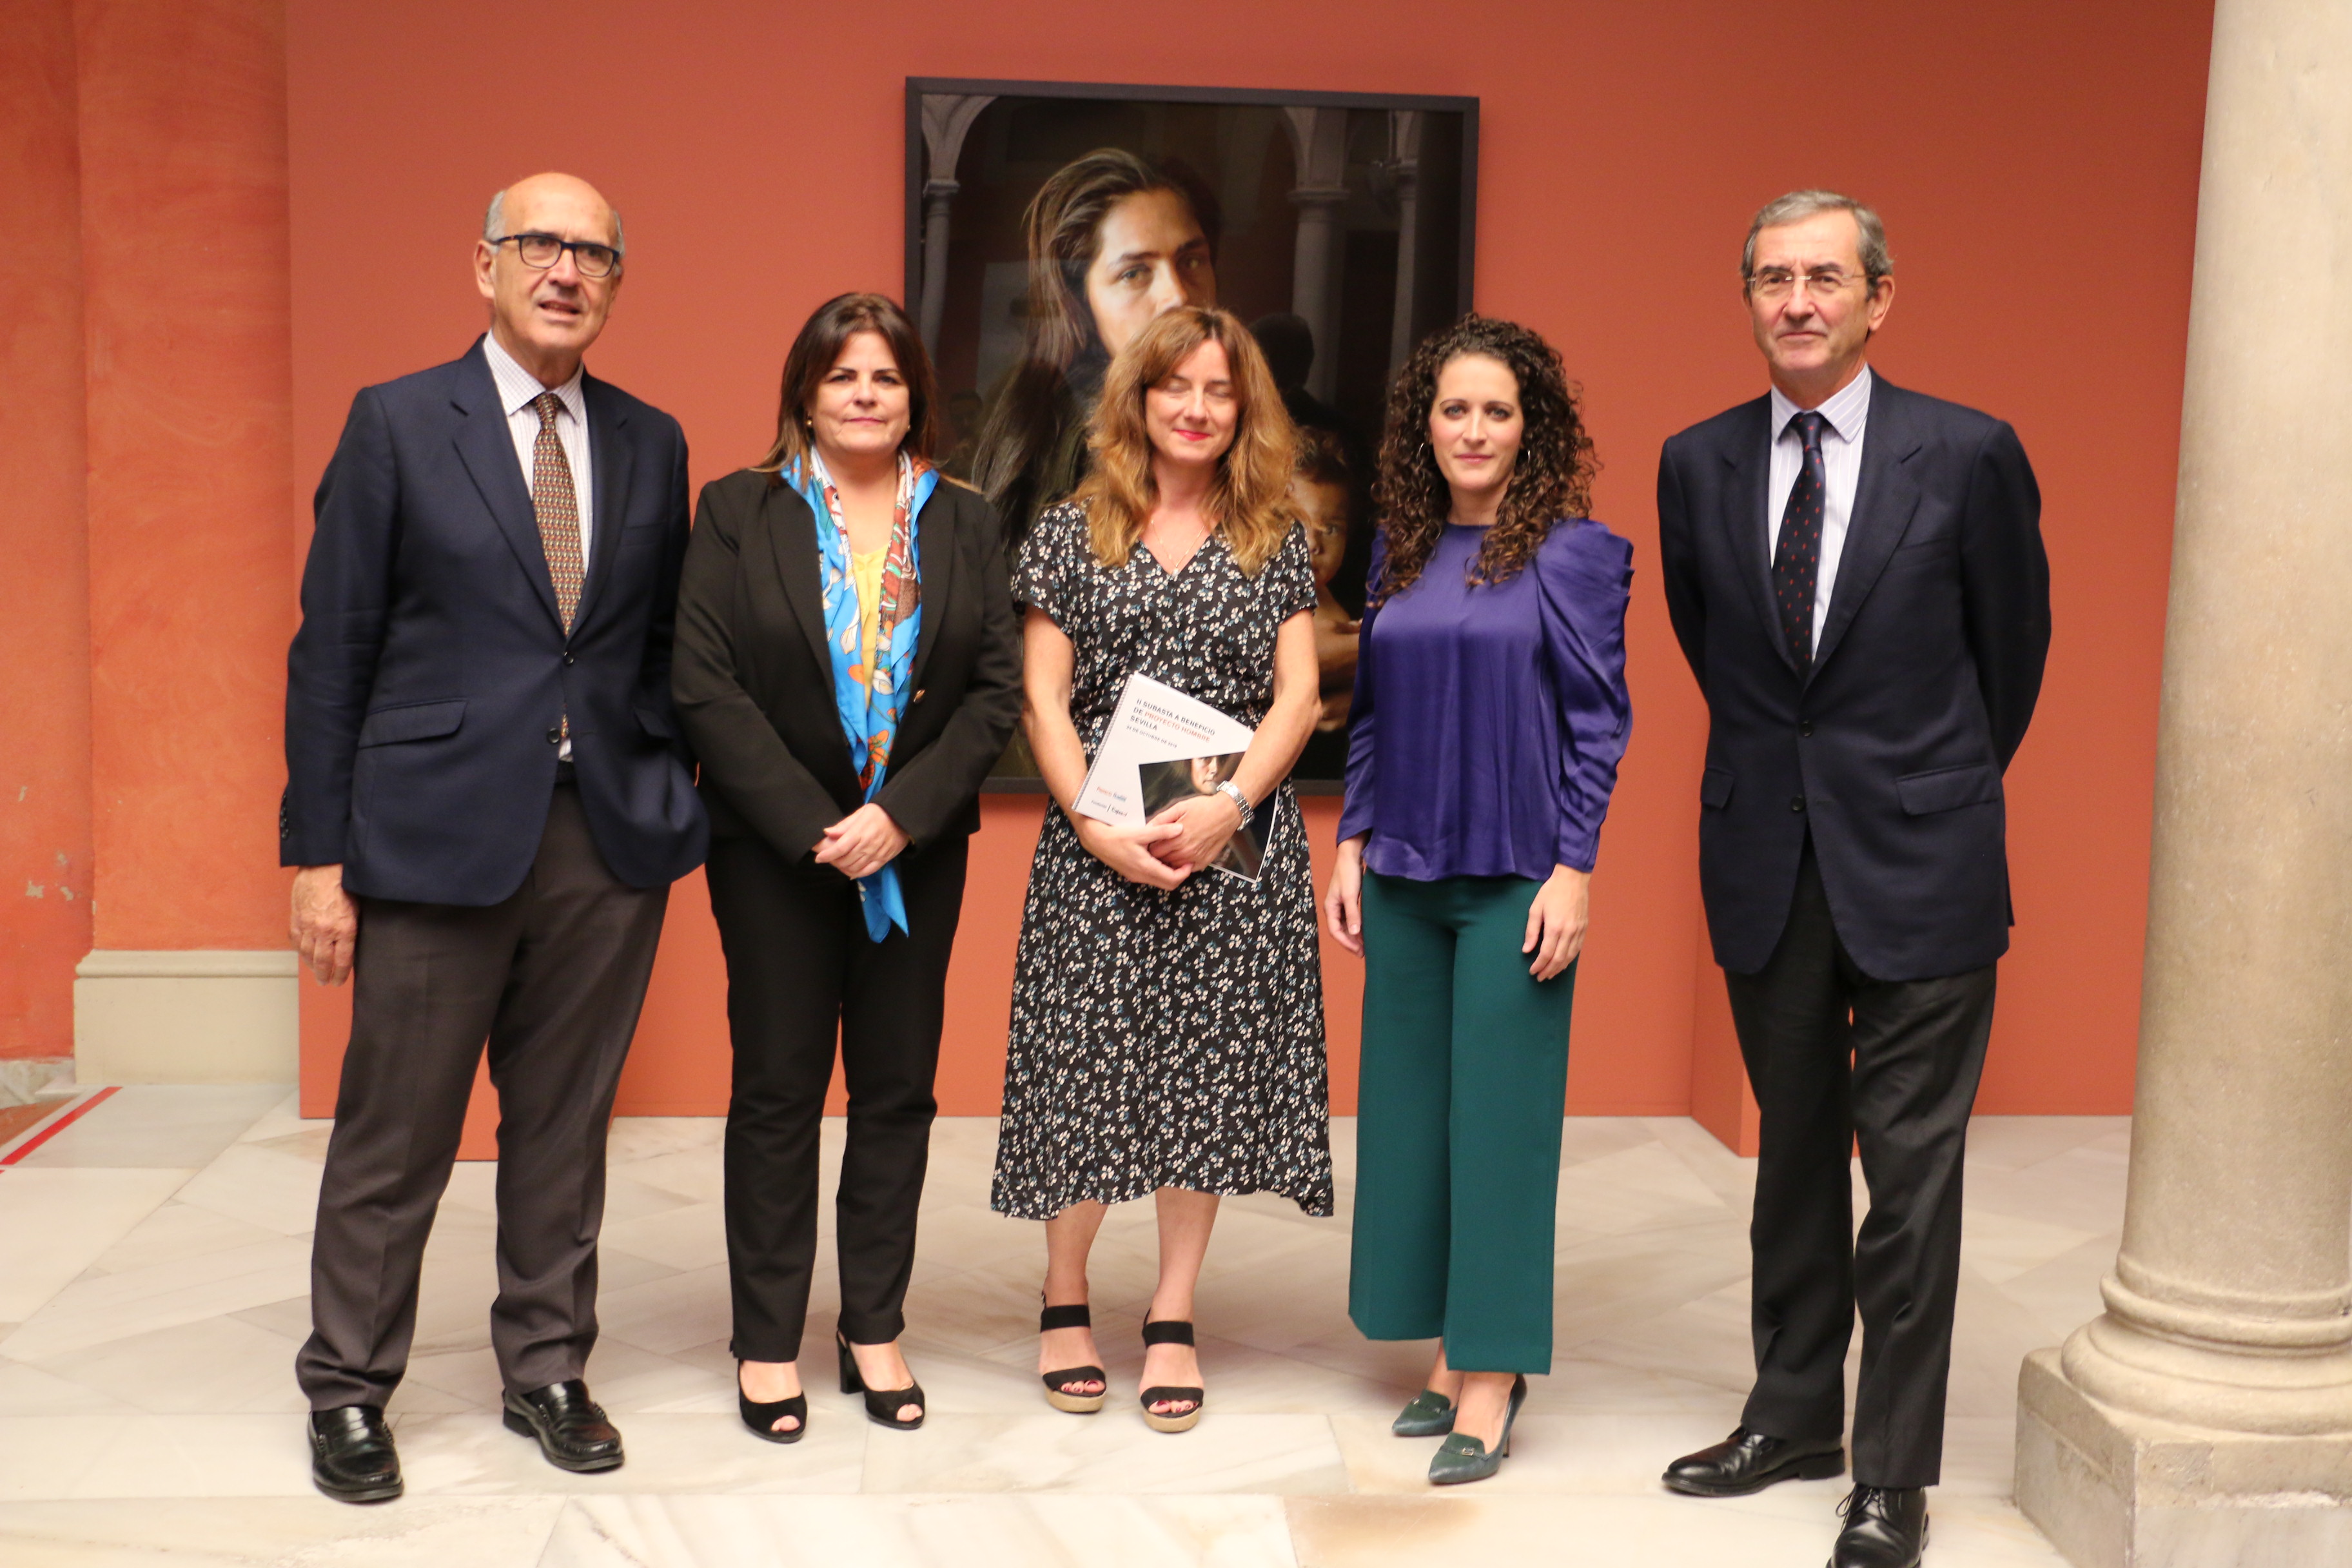 Reconocidos pintores, artistas y galerías de Sevilla ceden sus pinturas y obras para una exposición y subasta benéfica a favor de Proyecto Hombre en la Fundación Cajasol